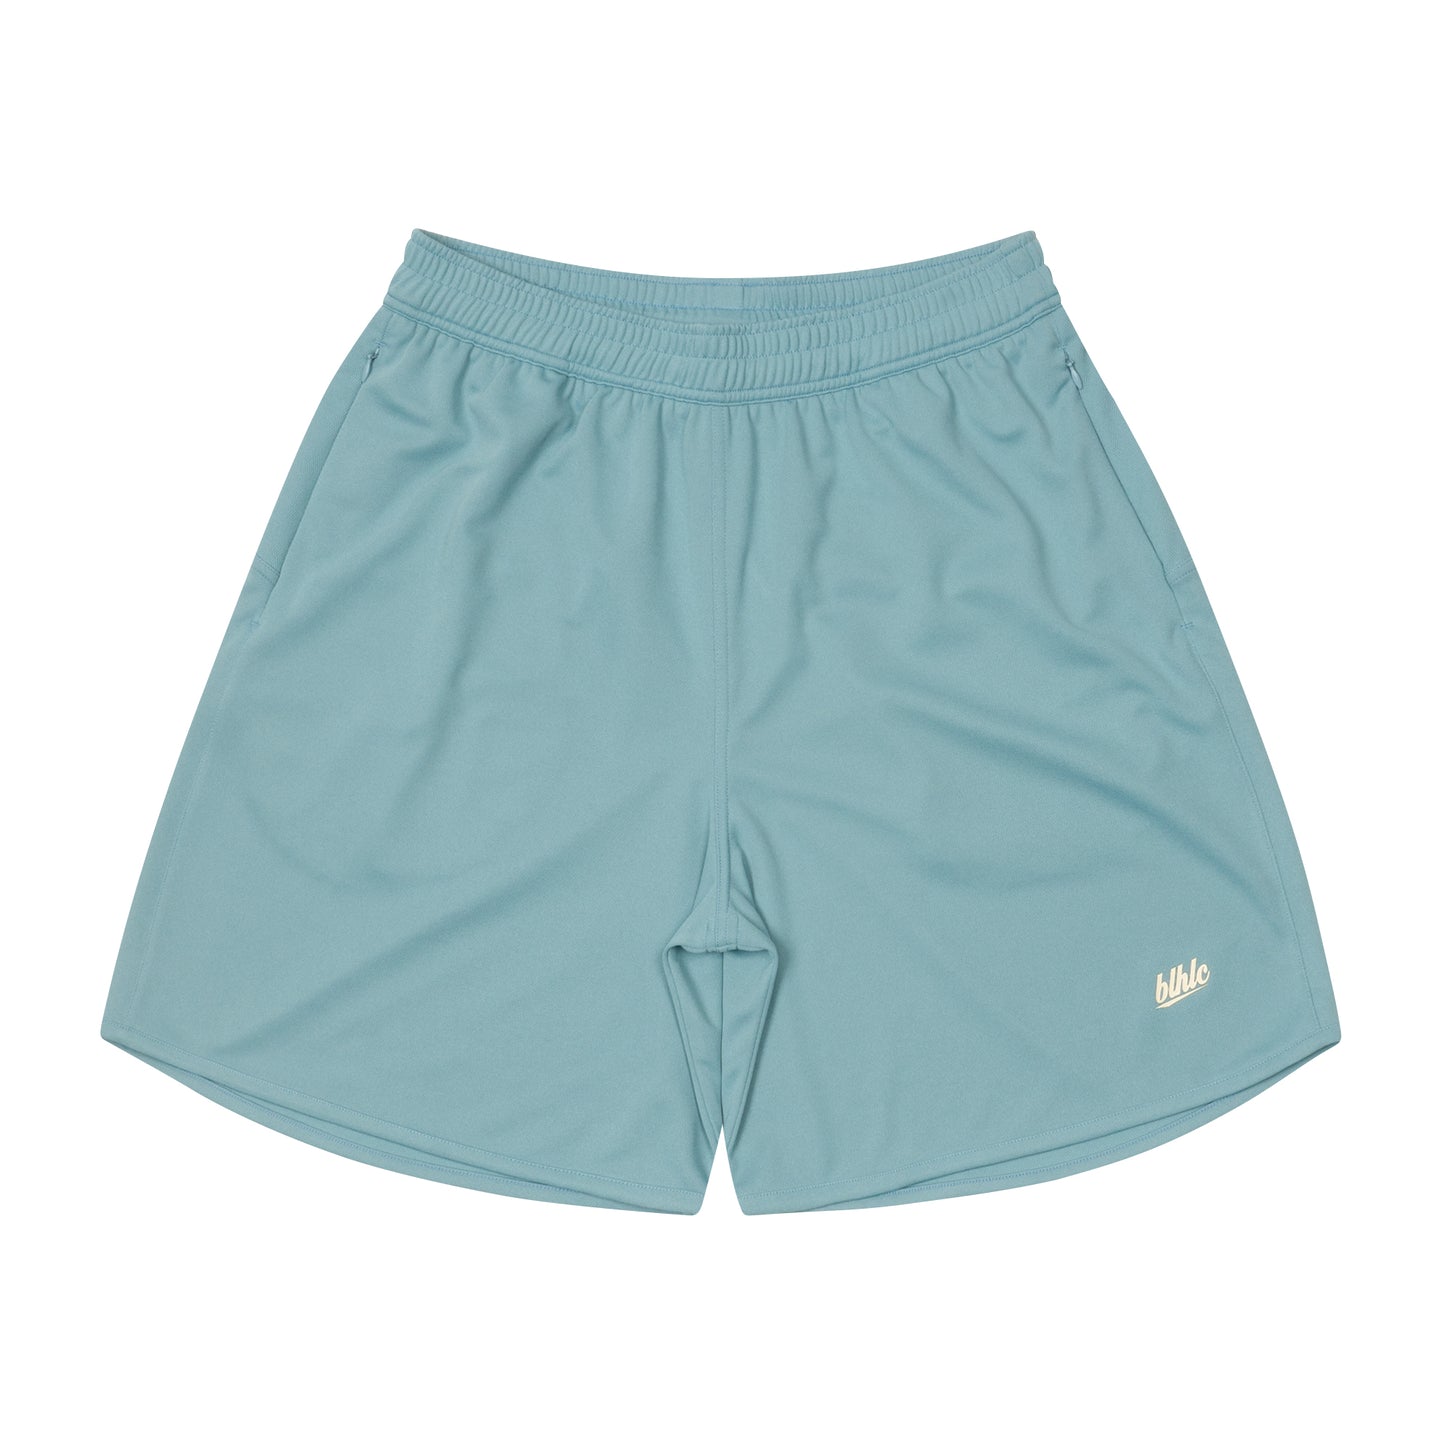 Basic Zip Shorts (adriatic blue/off white)